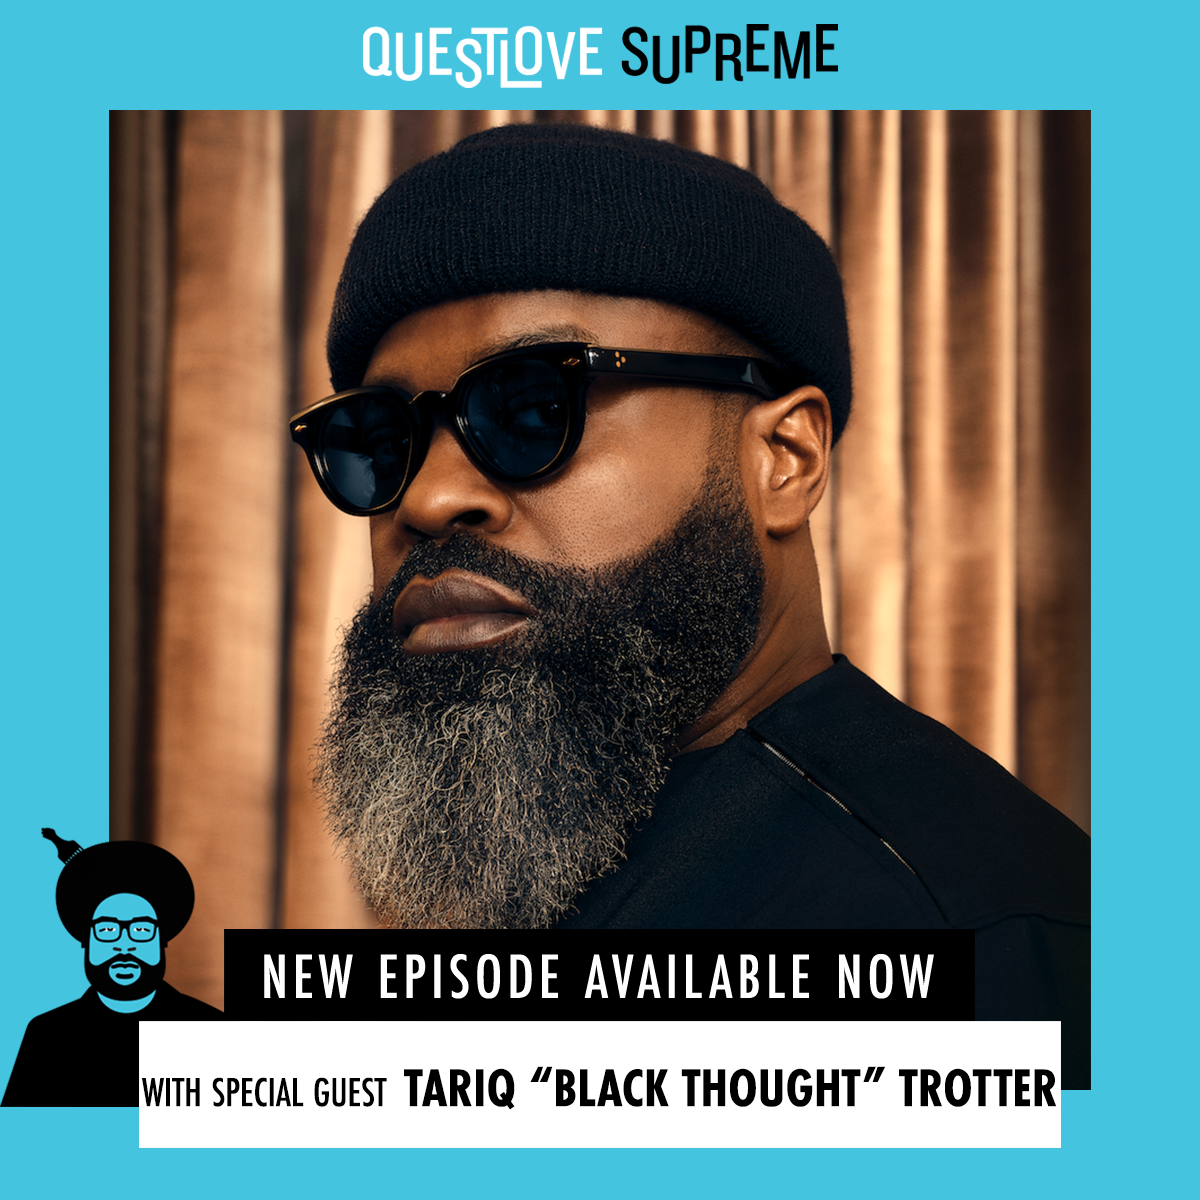 Tariq ”Black Thought” Trotter